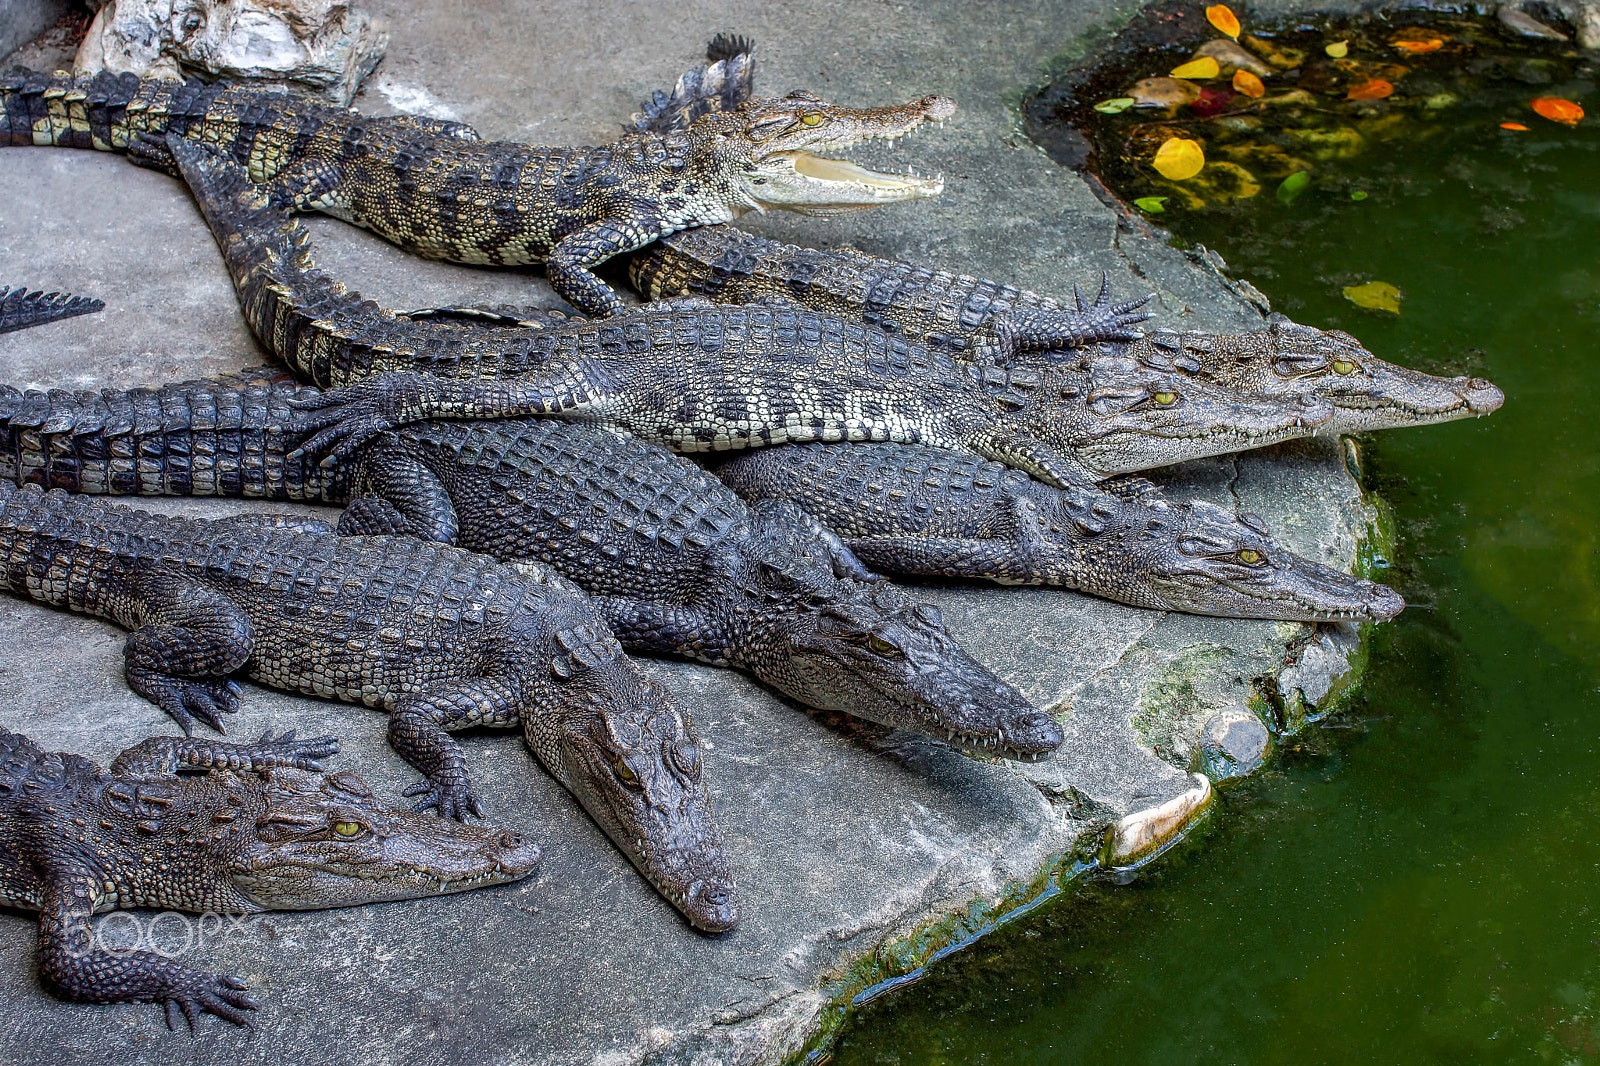 Sony SLT-A65 (SLT-A65V) sample photo. 7 crocodiles on the river side photography